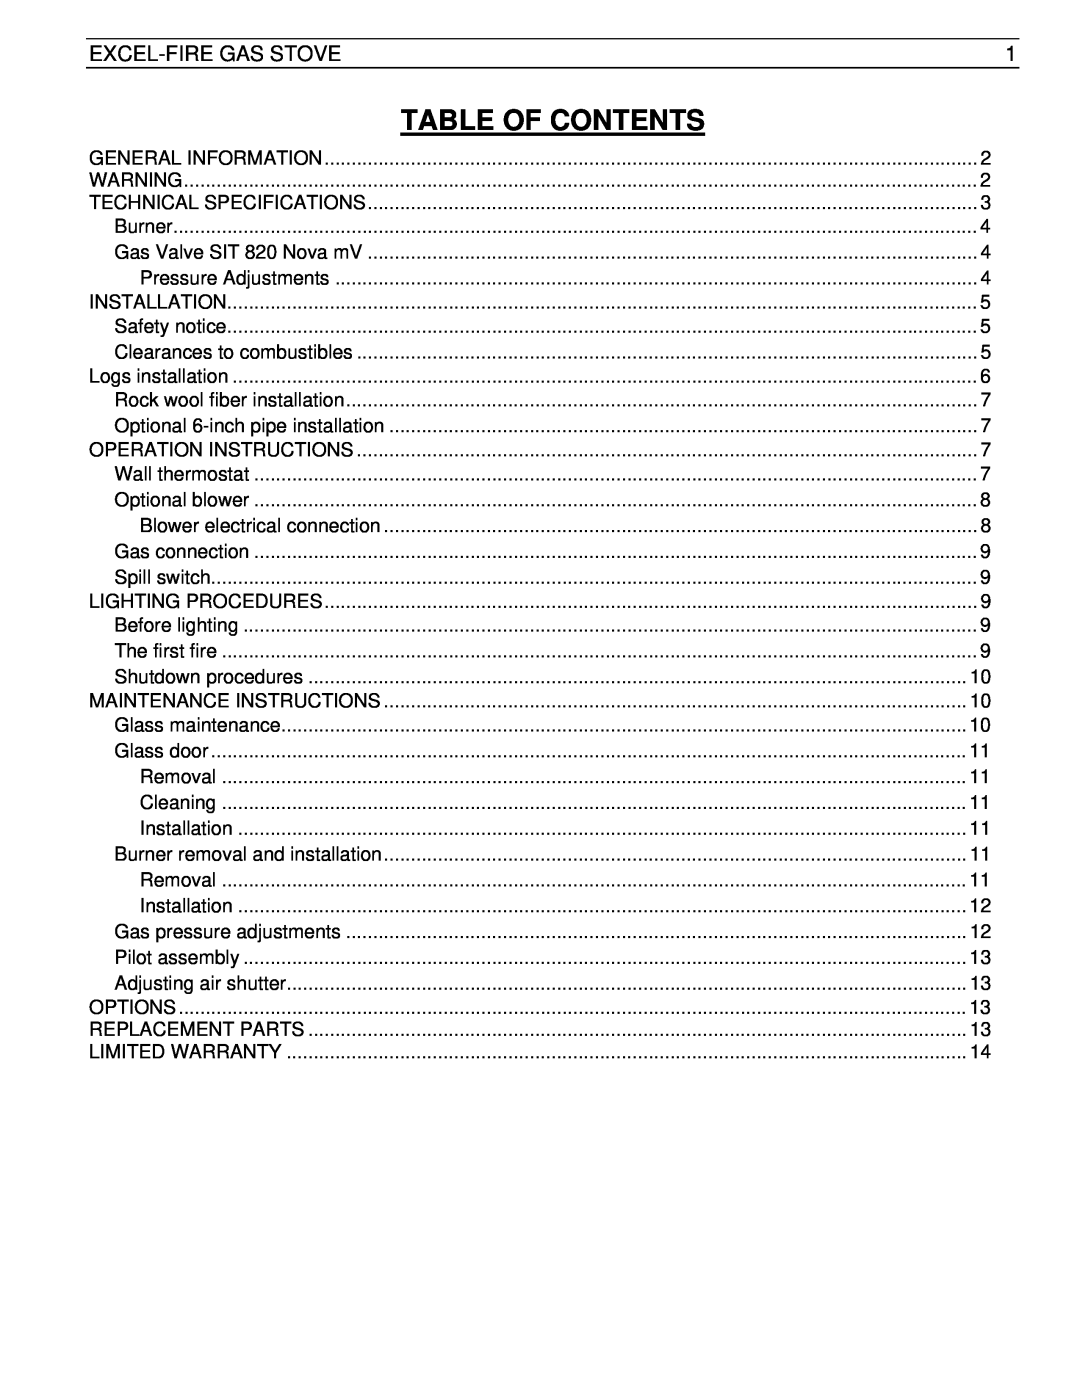 Drolet SIT 0.820.634 Nova manual Table Of Contents, Excel-Firegas Stove 